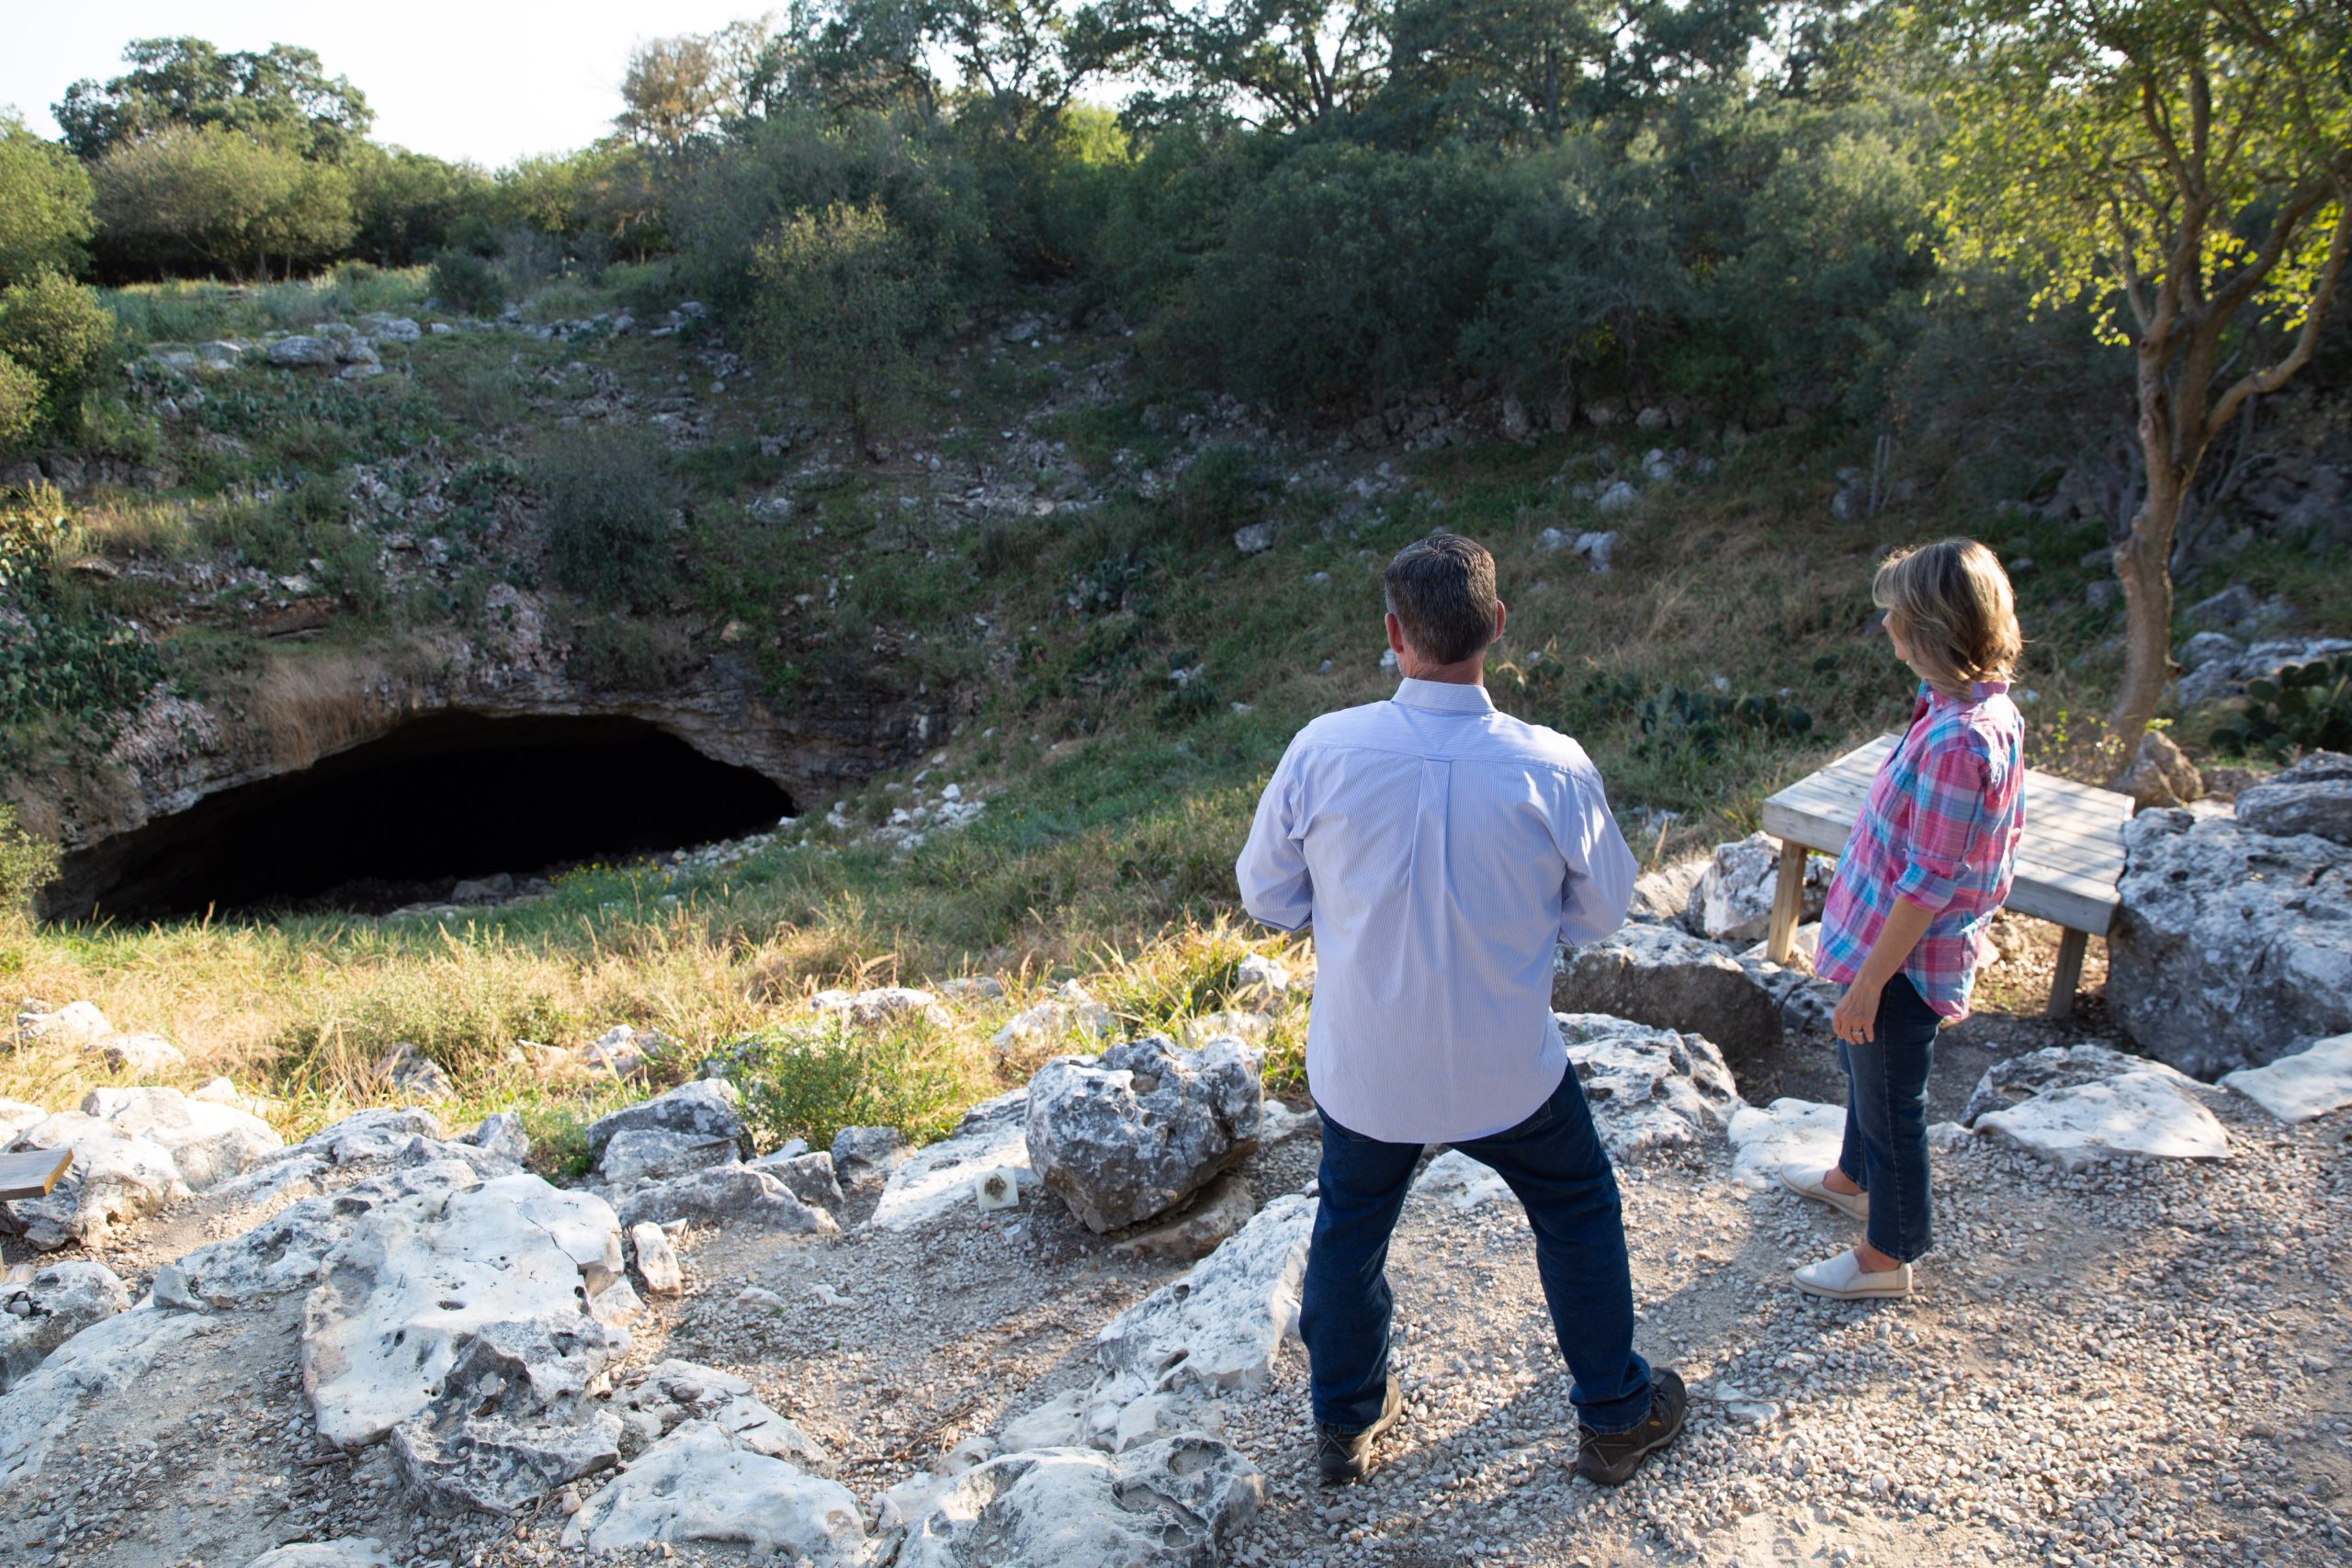 Samantha Brown visits Bracken Cave in San Antonio Texas